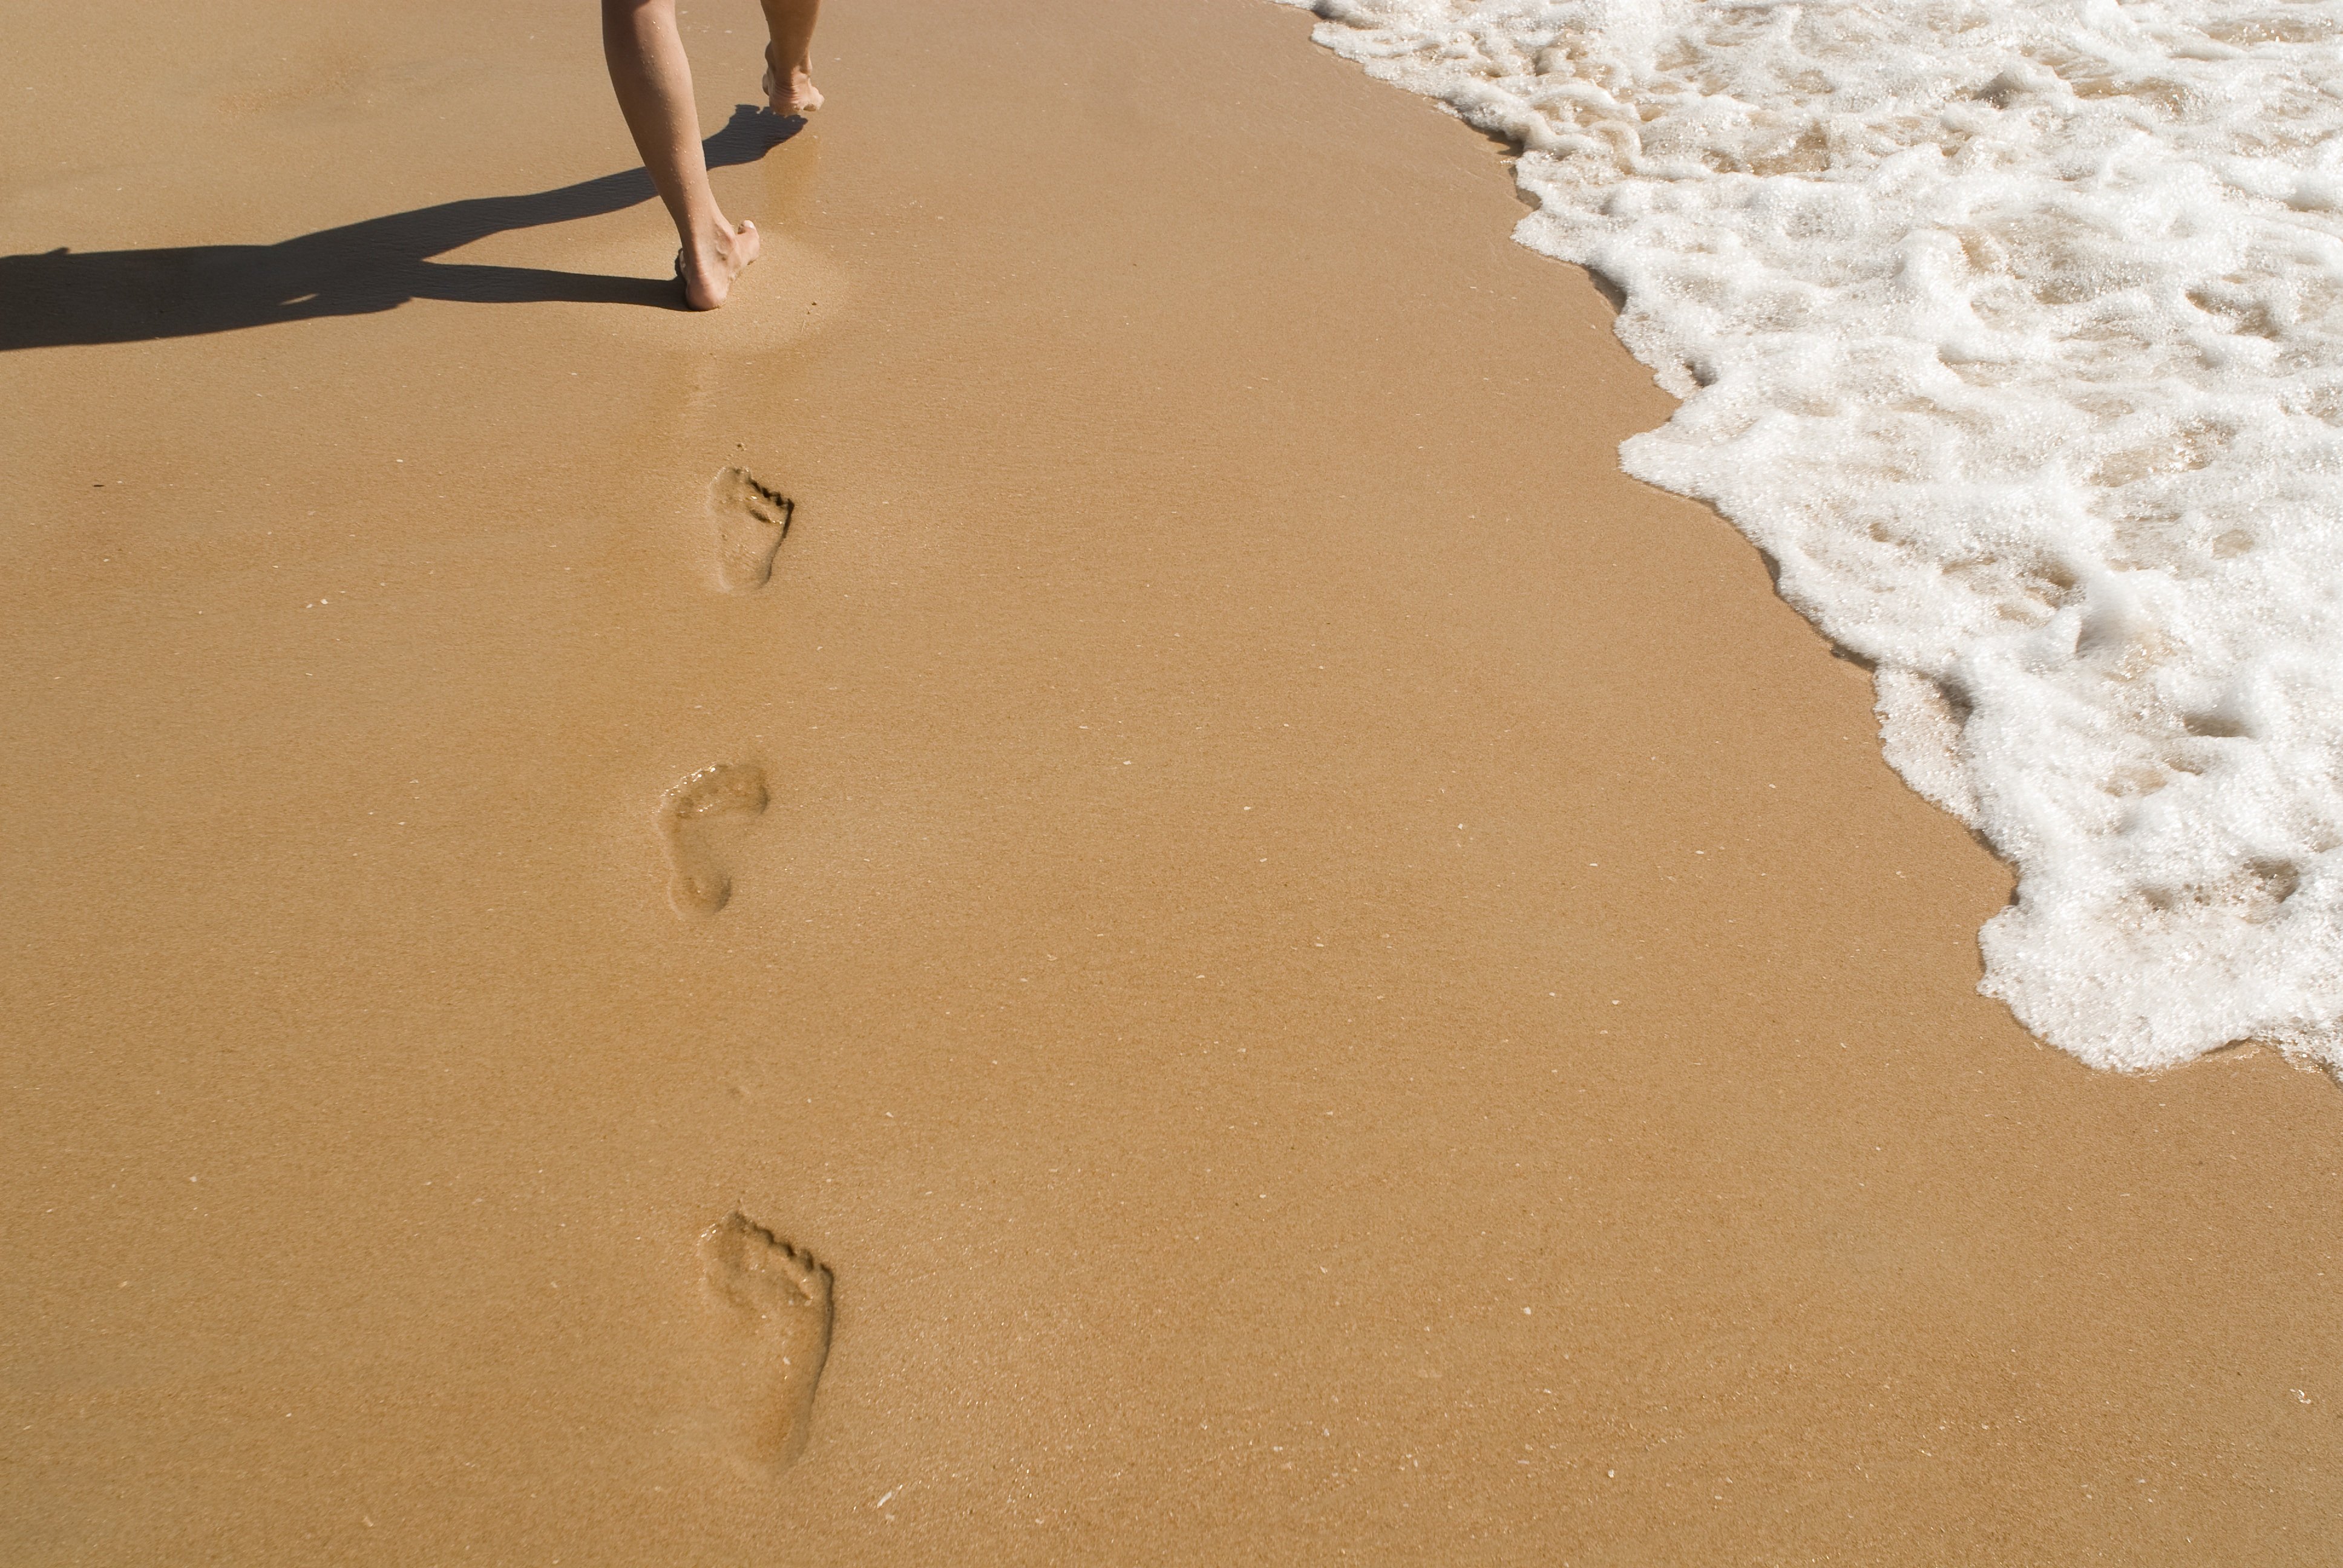 Бегу по следам песня. Следы на песке. Следы человека на песке. Пляж песок. След стопы на песке.